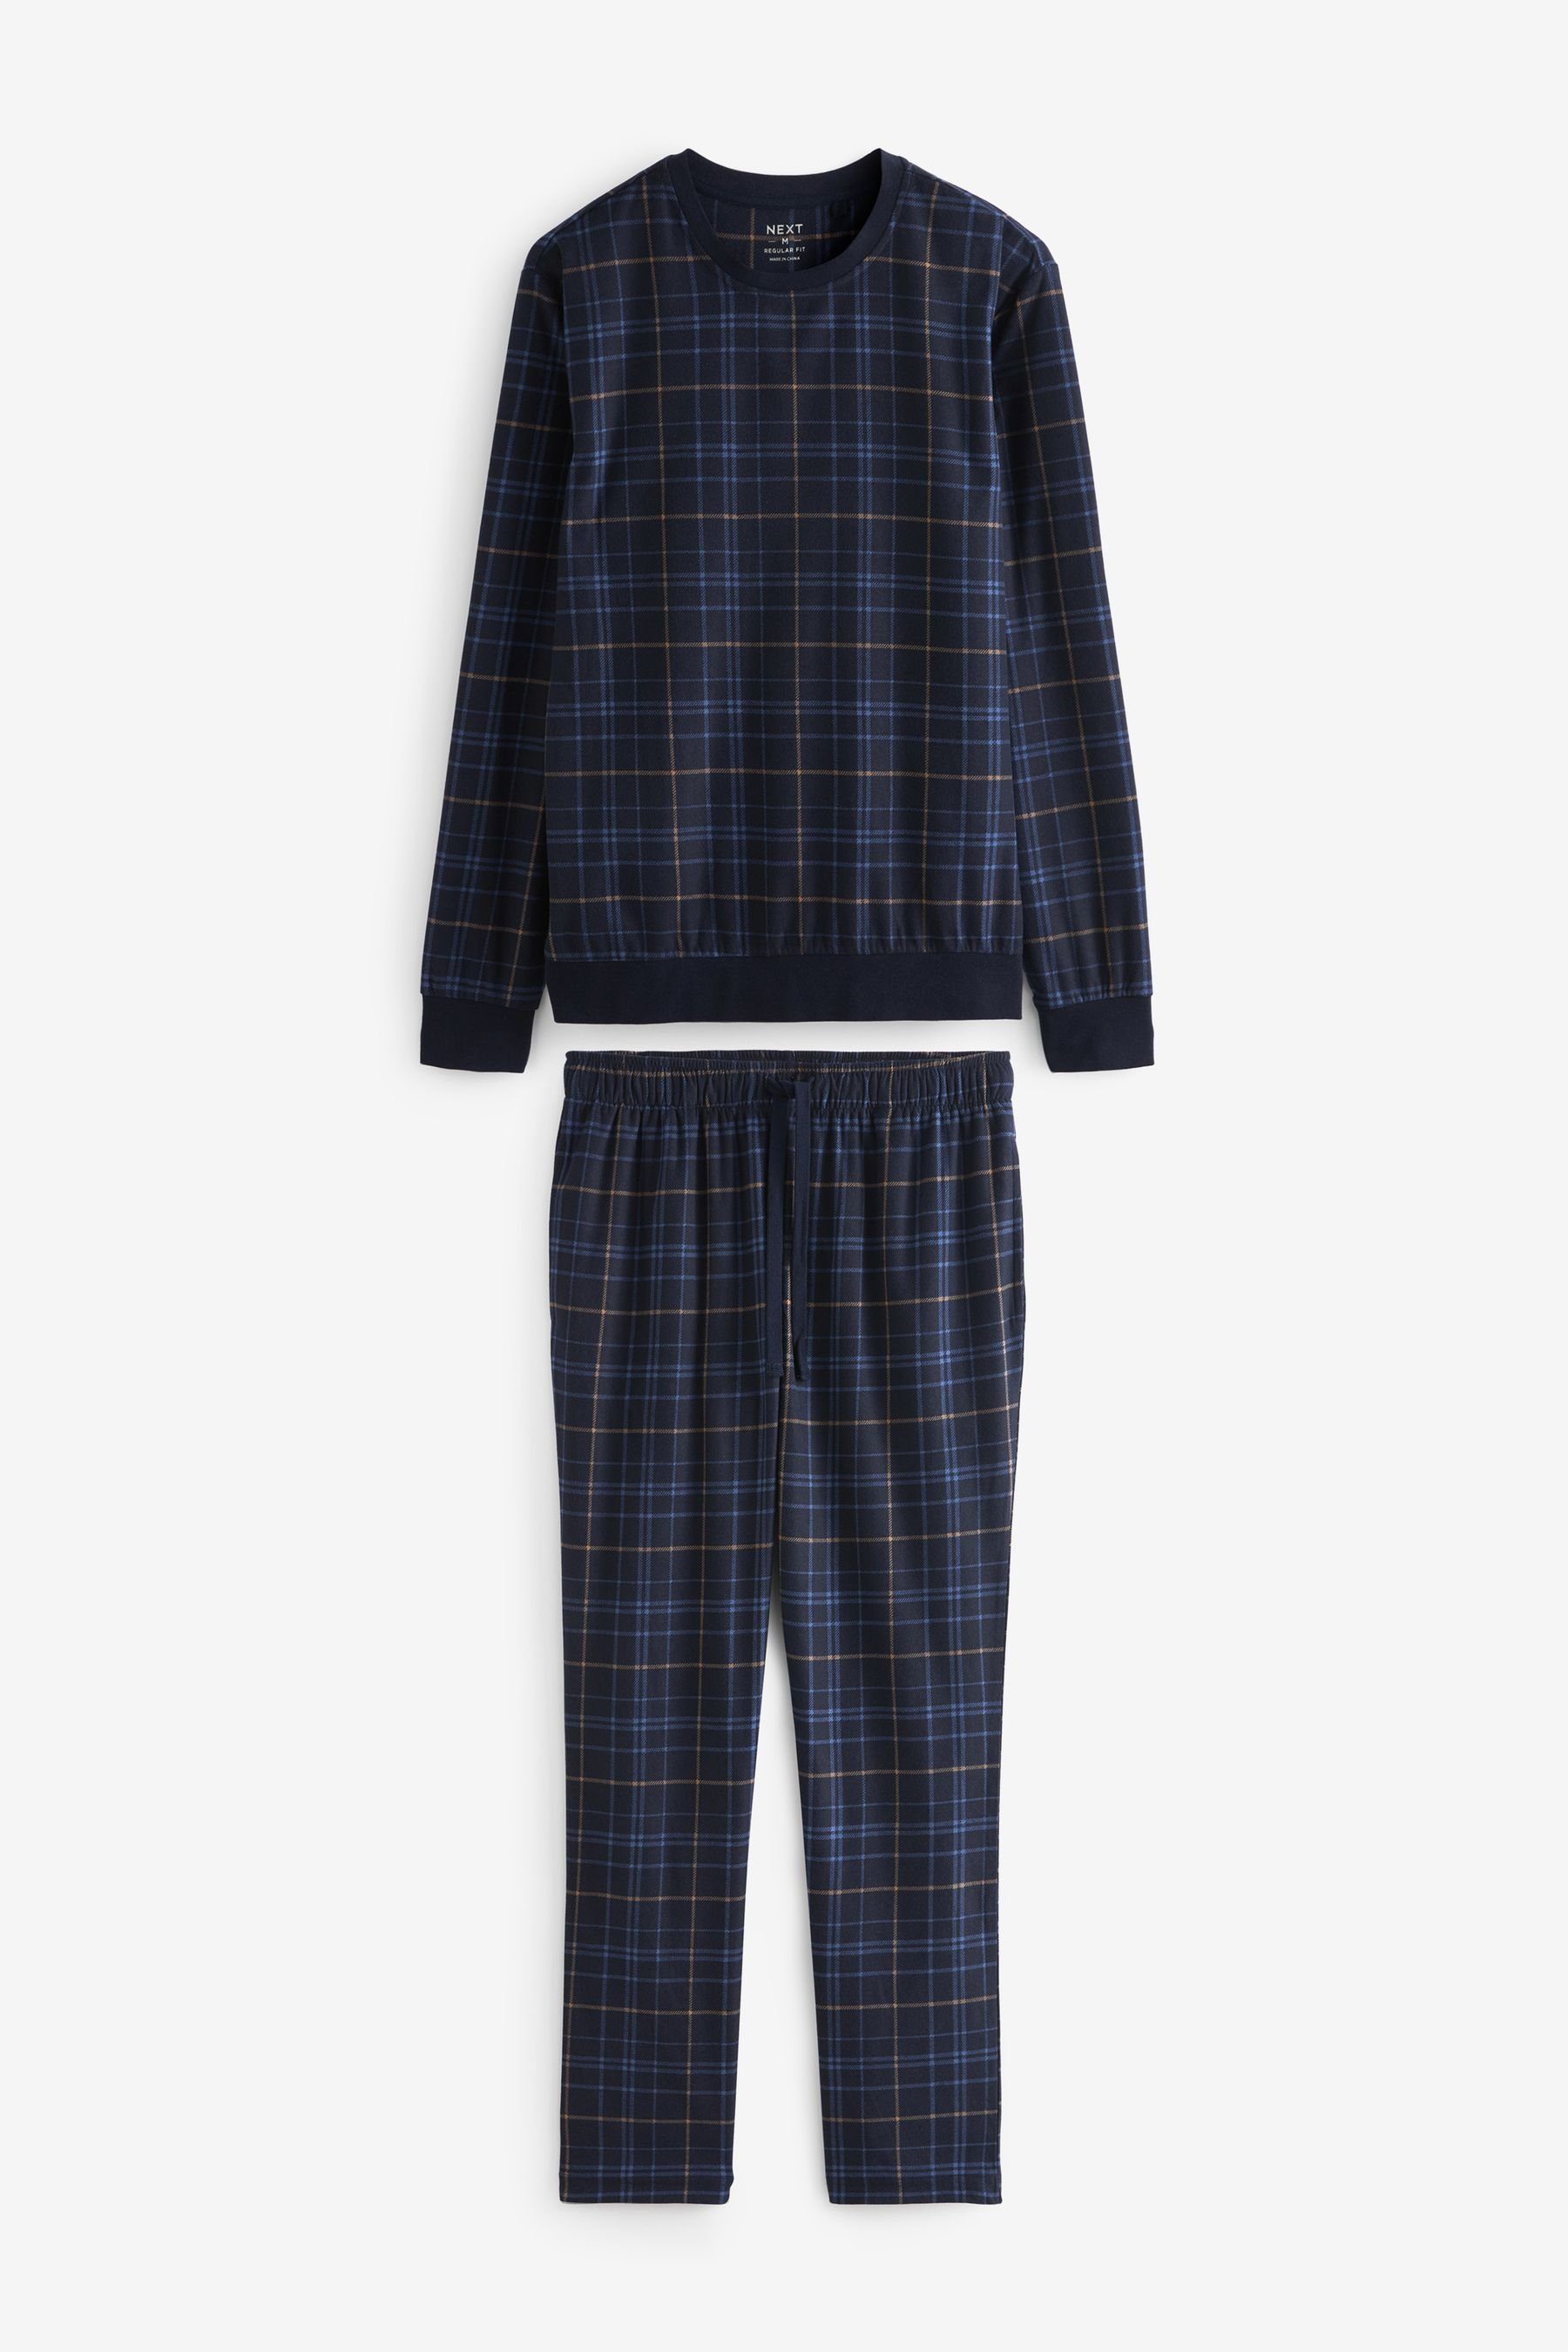 Next Pyjama Motionflex Bequemer Pyjama (2 tlg)